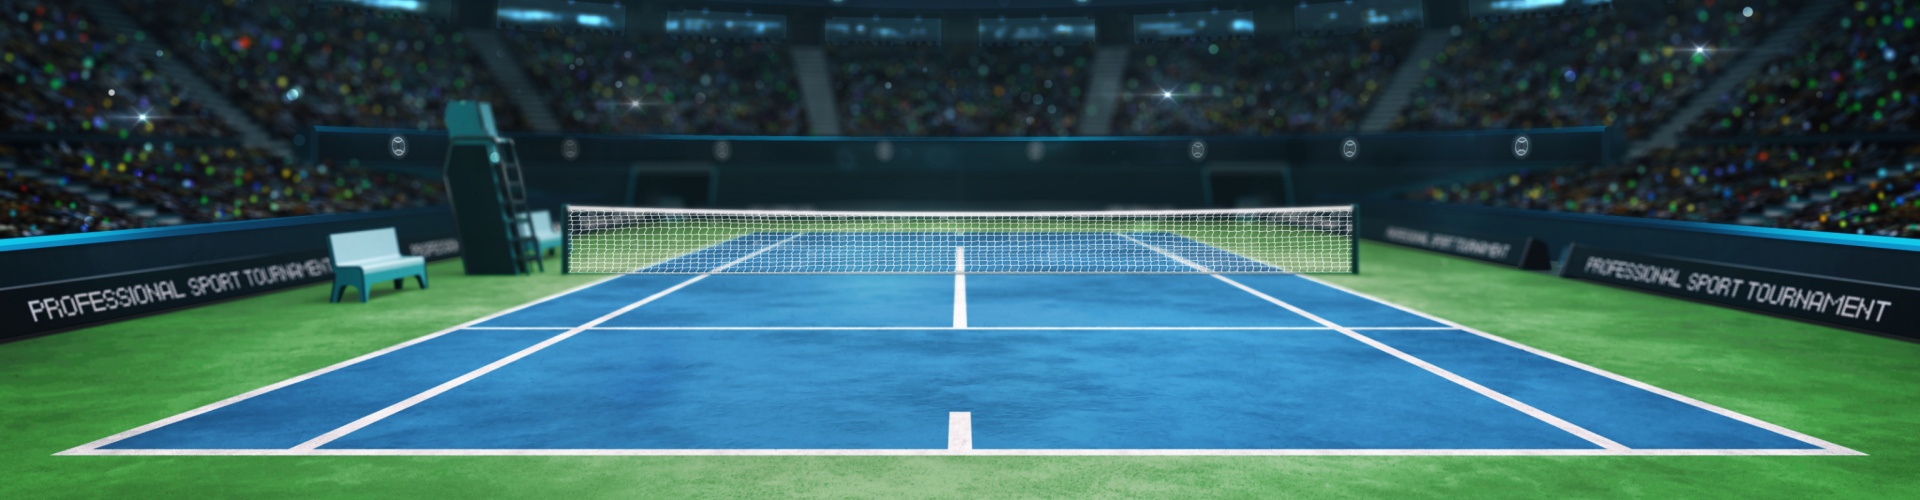 Afleiden Rusland verdediging Tennisracket kopen? | Vergelijk alle merken – Tennis-racket.nl